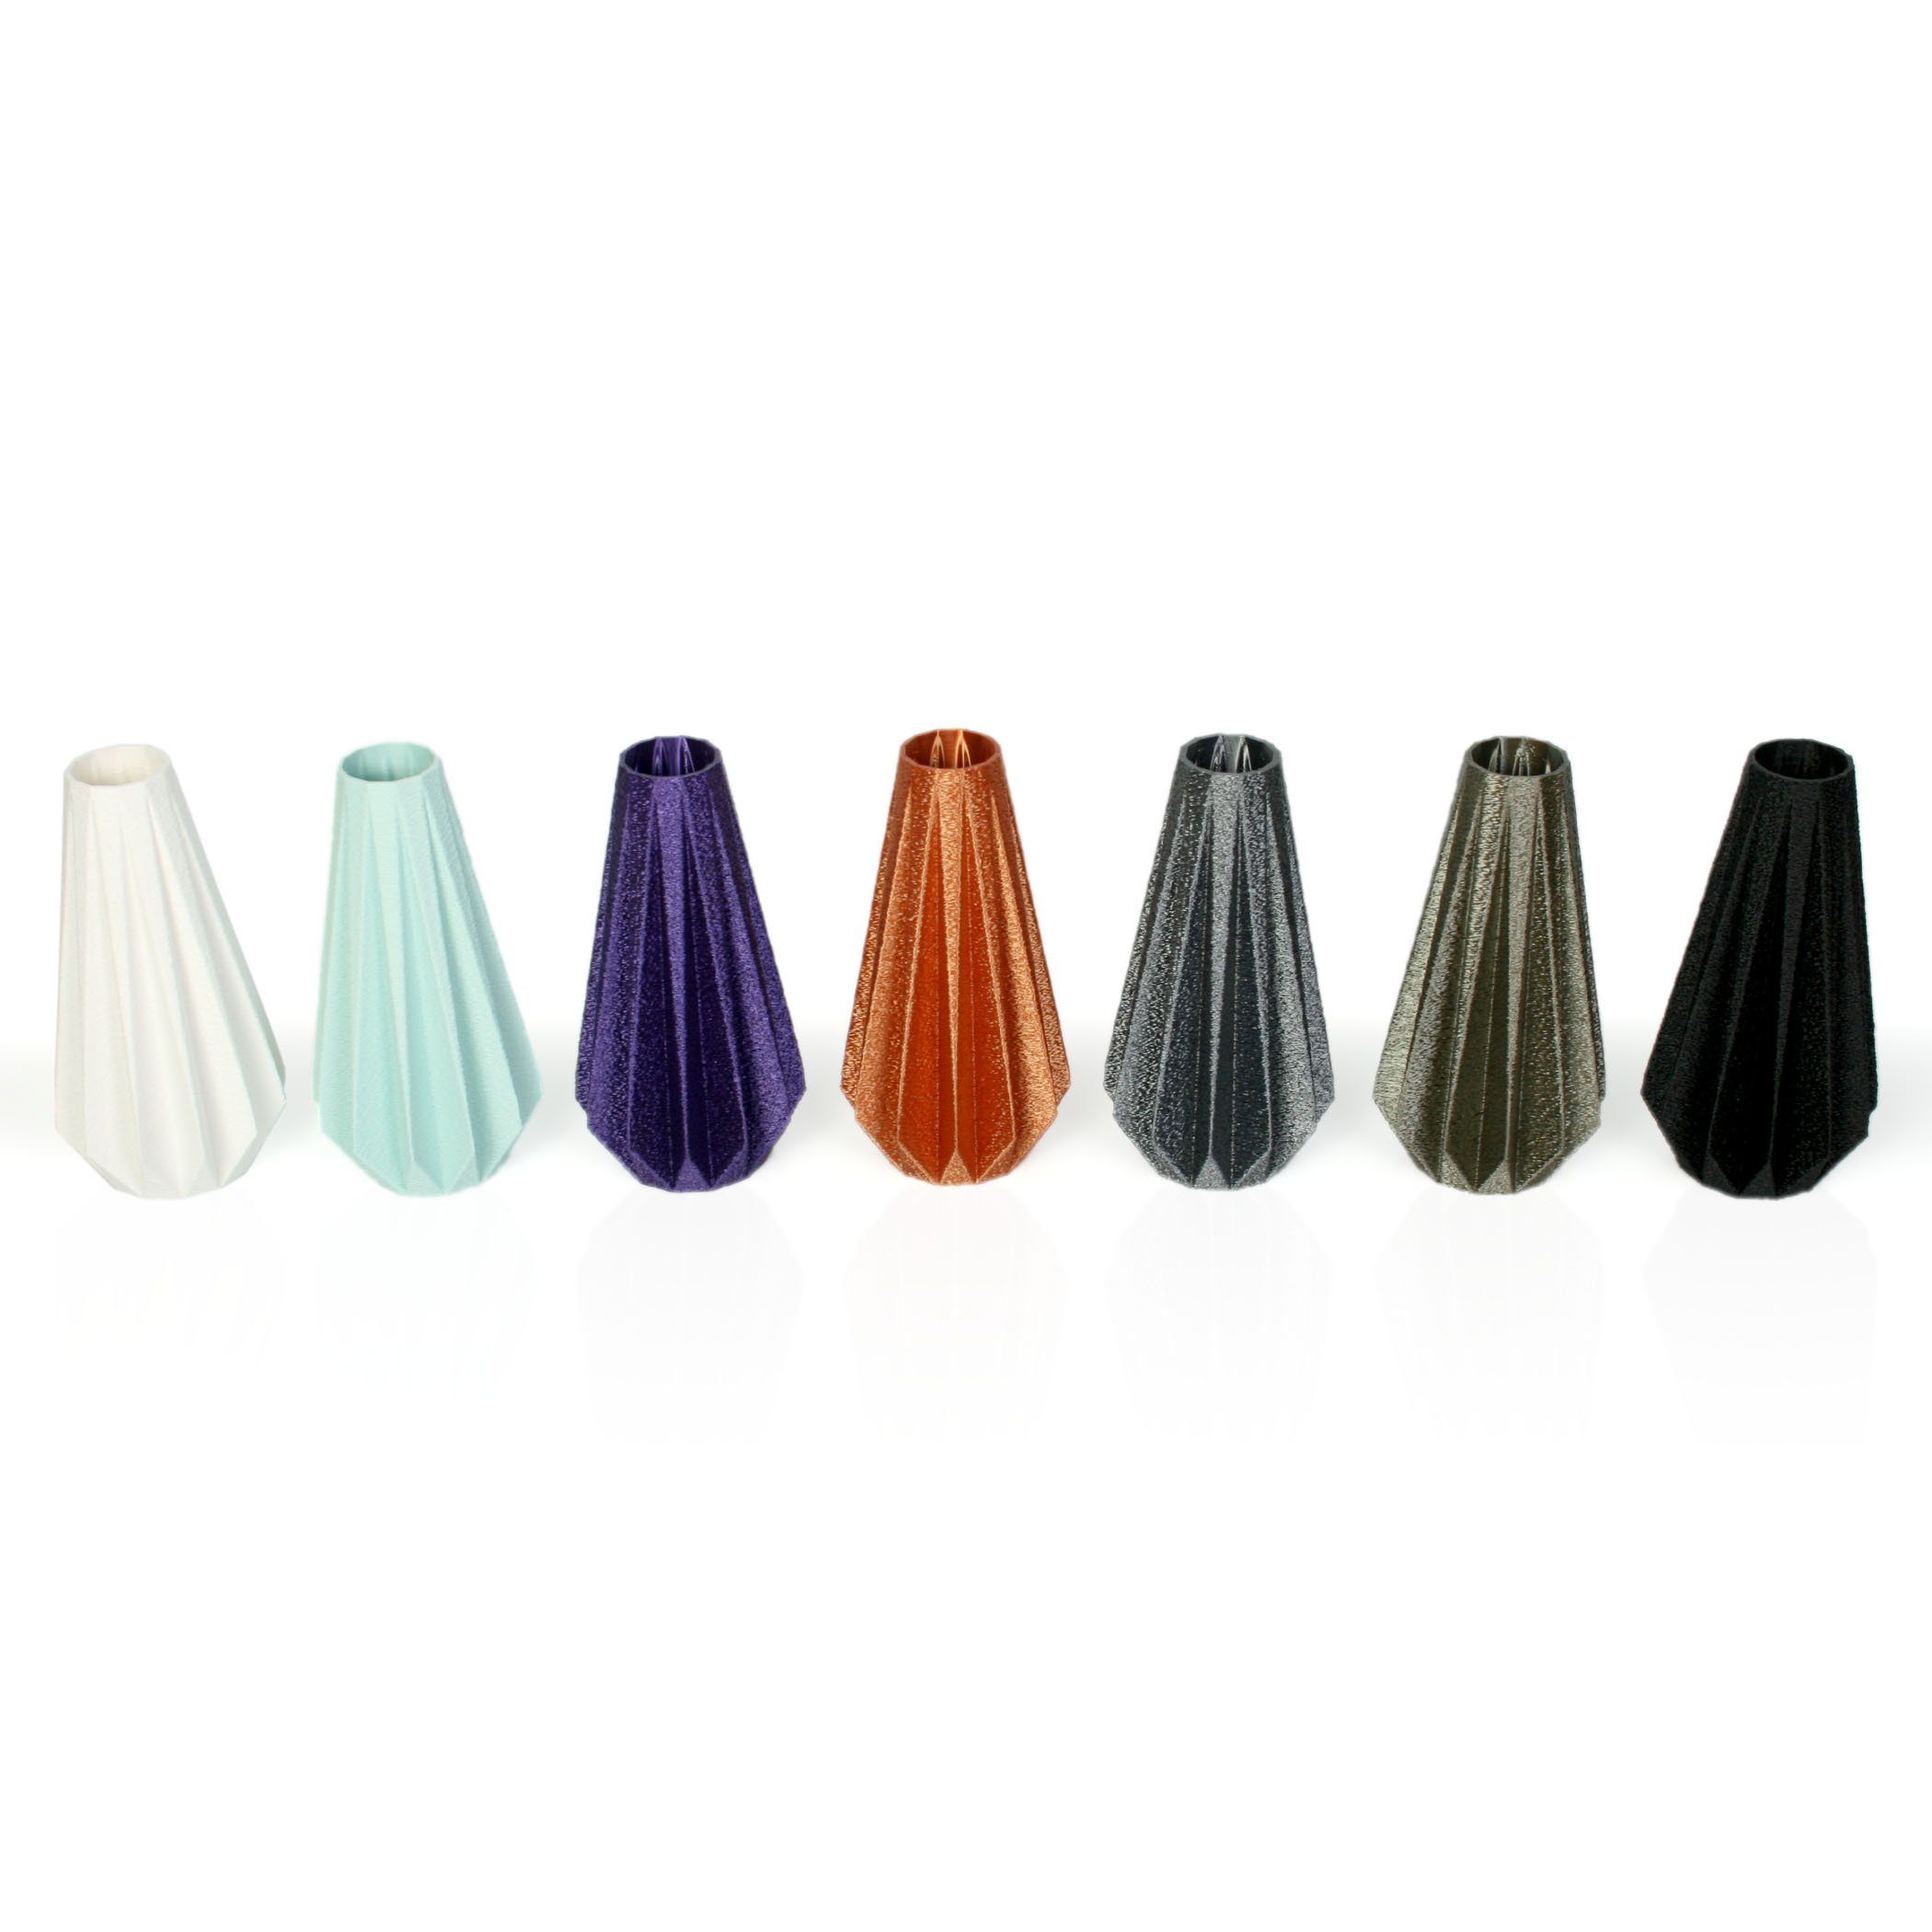 Kreative Feder Dekovase Designer Vase Copper – Blumenvase bruchsicher aus Dekorative & Rohstoffen; aus wasserdicht Old Bio-Kunststoff, nachwachsenden